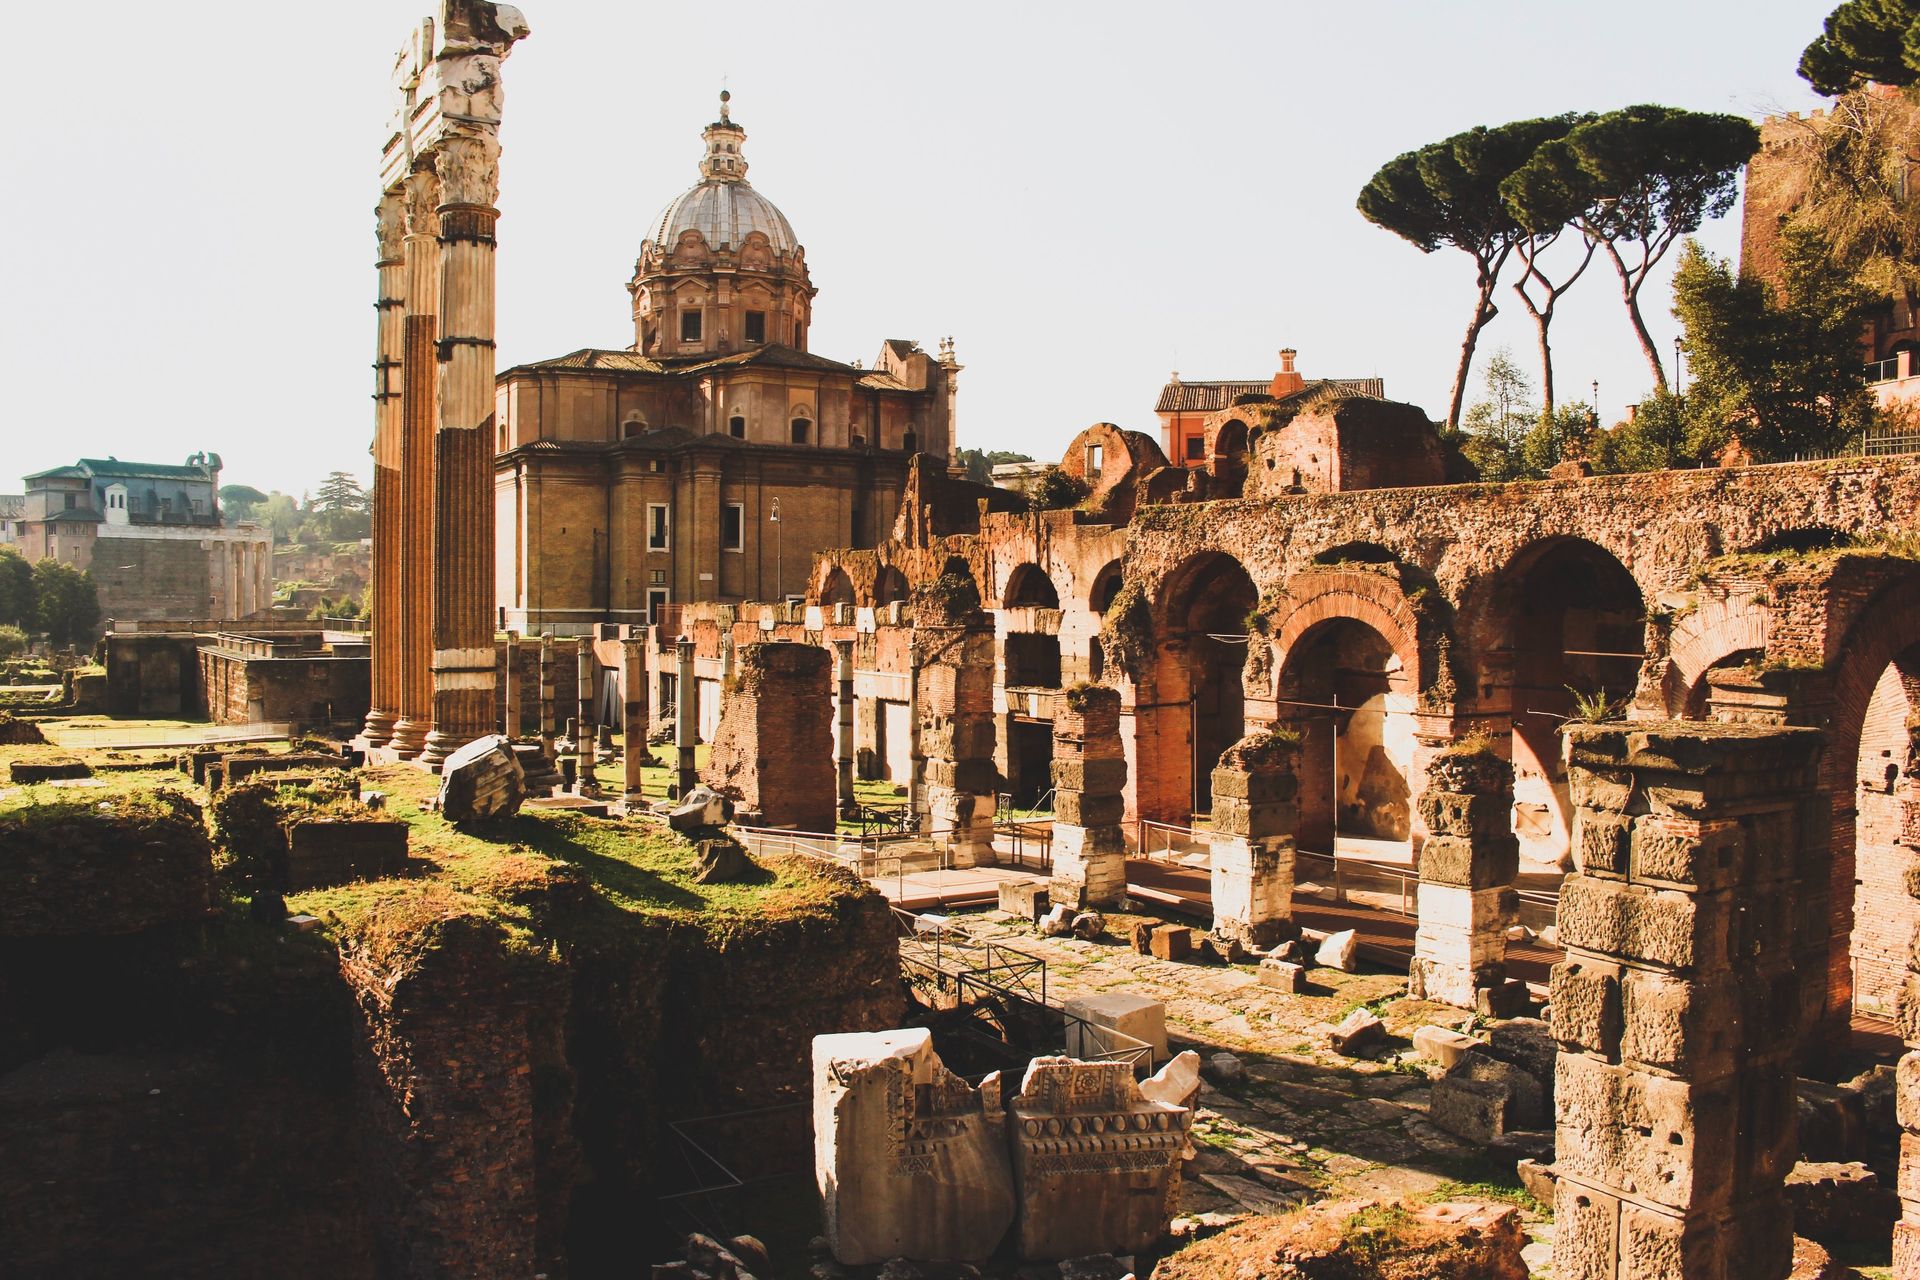 Forum romain, Rome - Italie